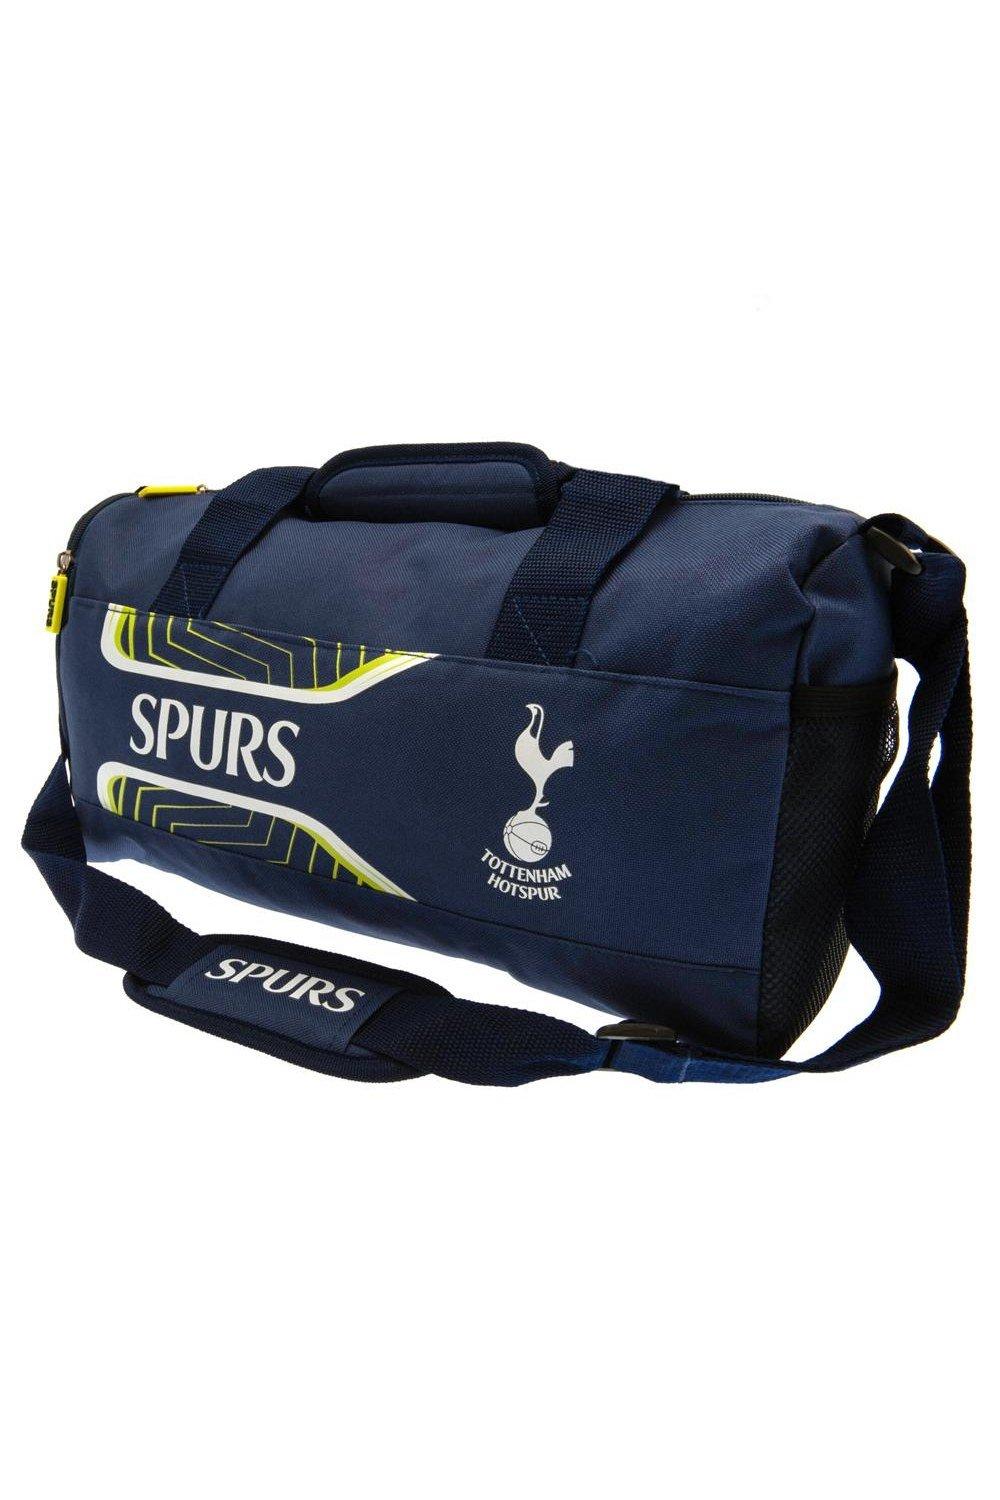 Спортивная сумка Flash Tottenham Hotspur FC, темно-синий флэш рюкзак tottenham hotspur fc темно синий